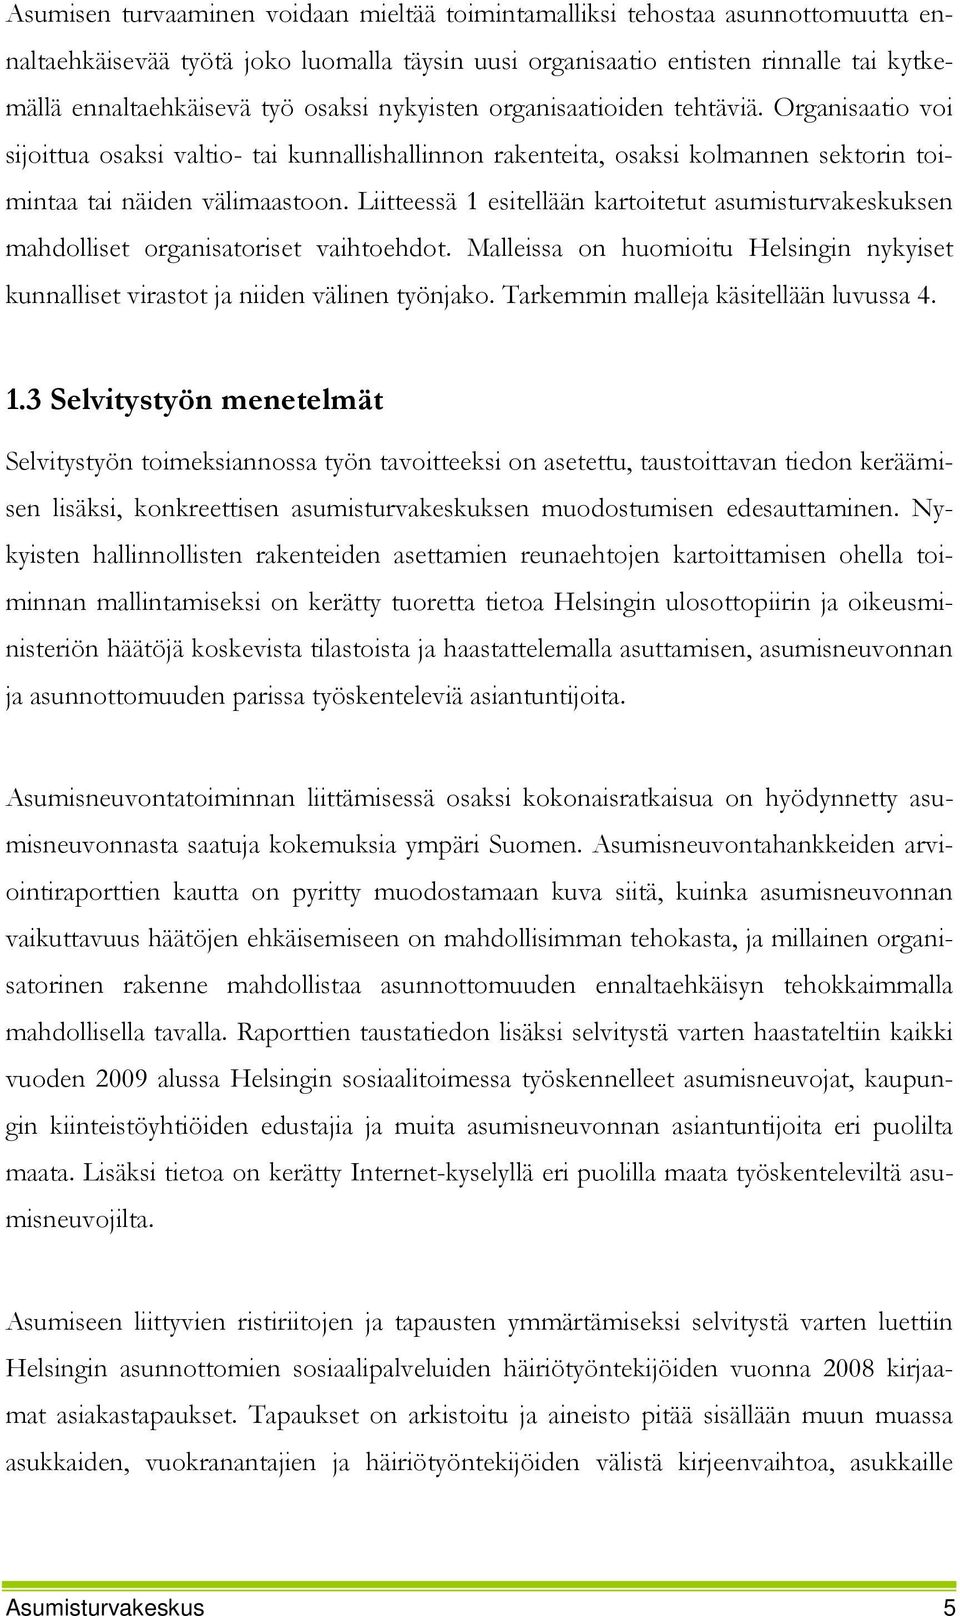 Liitteessä 1 esitellään kartoitetut asumisturvakeskuksen mahdolliset organisatoriset vaihtoehdot. Malleissa on huomioitu Helsingin nykyiset kunnalliset virastot ja niiden välinen työnjako.